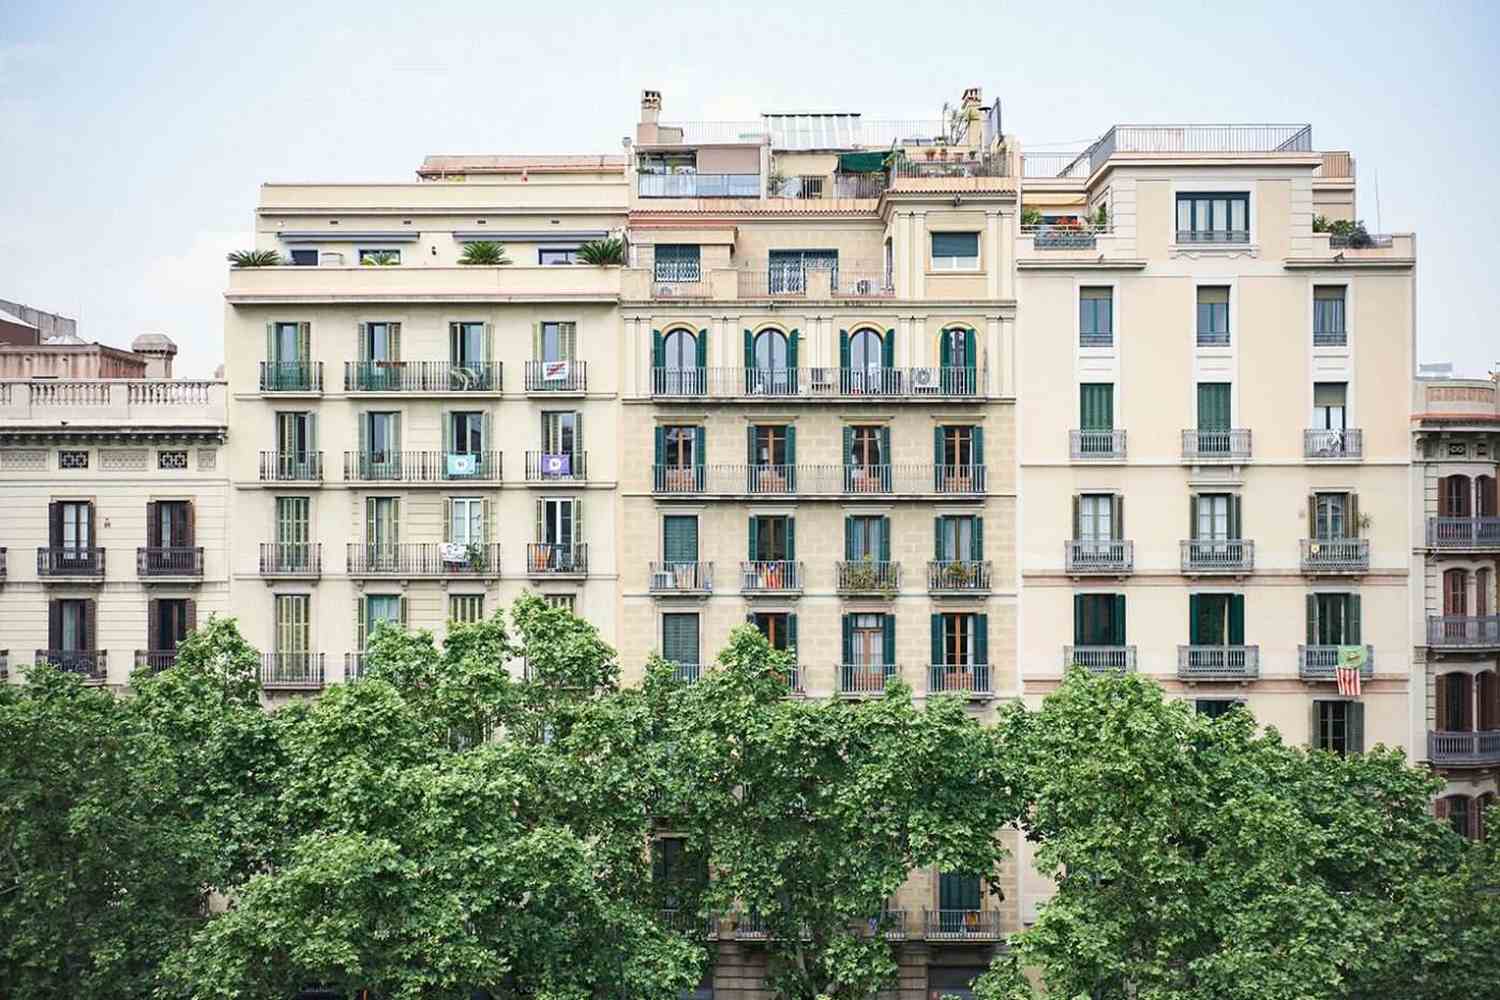 Hotel Casa Bonay Barcelona, Catalonia - Spain